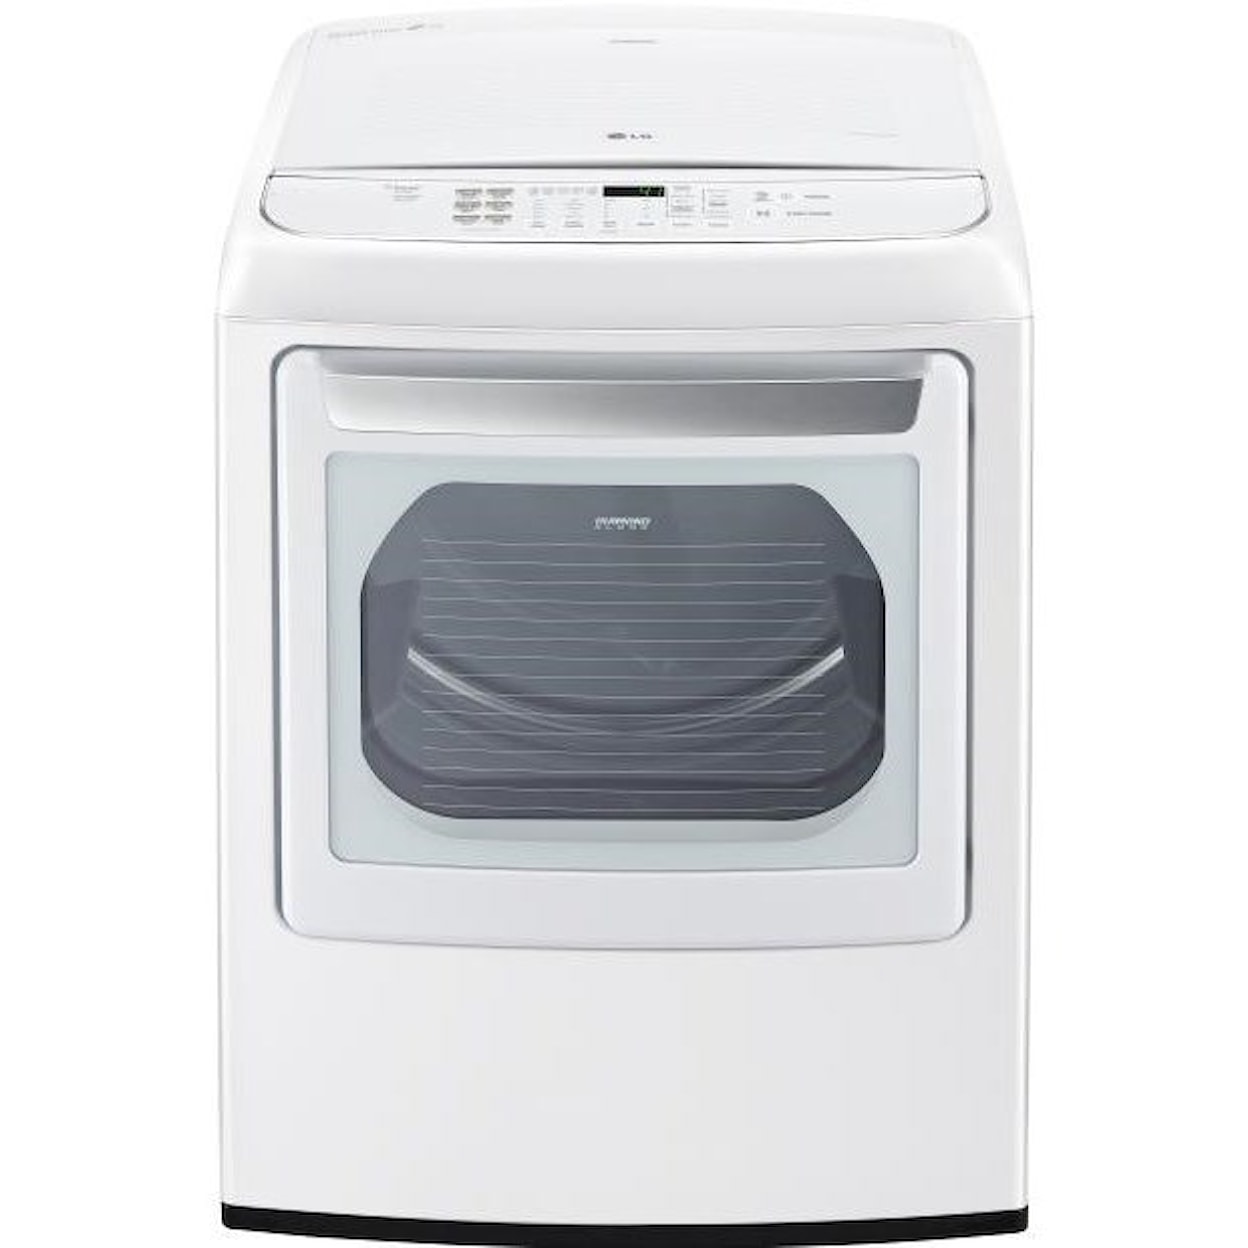 LG Appliances Dryers 7.3 Cu. Ft. Front Control Electric Dryer